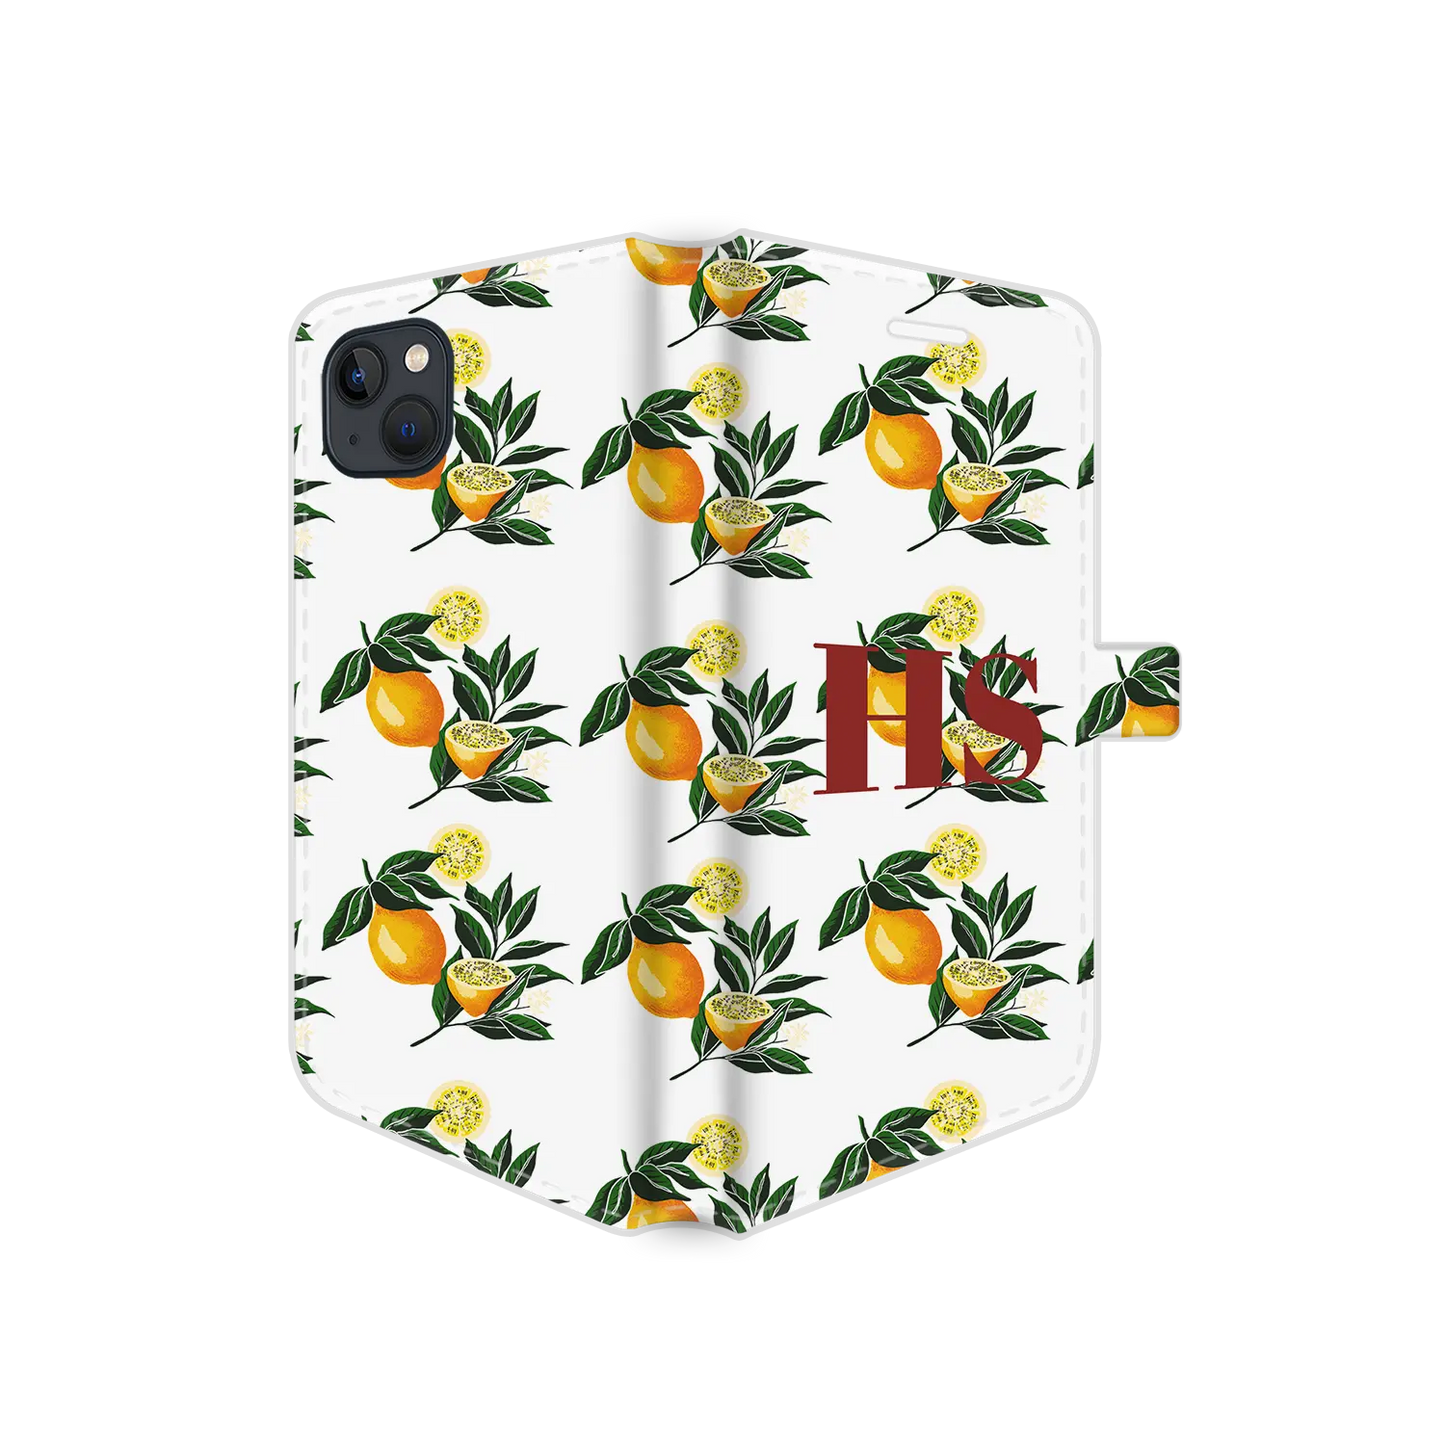 Patrón de limón - Carcasa personalizada iPhone